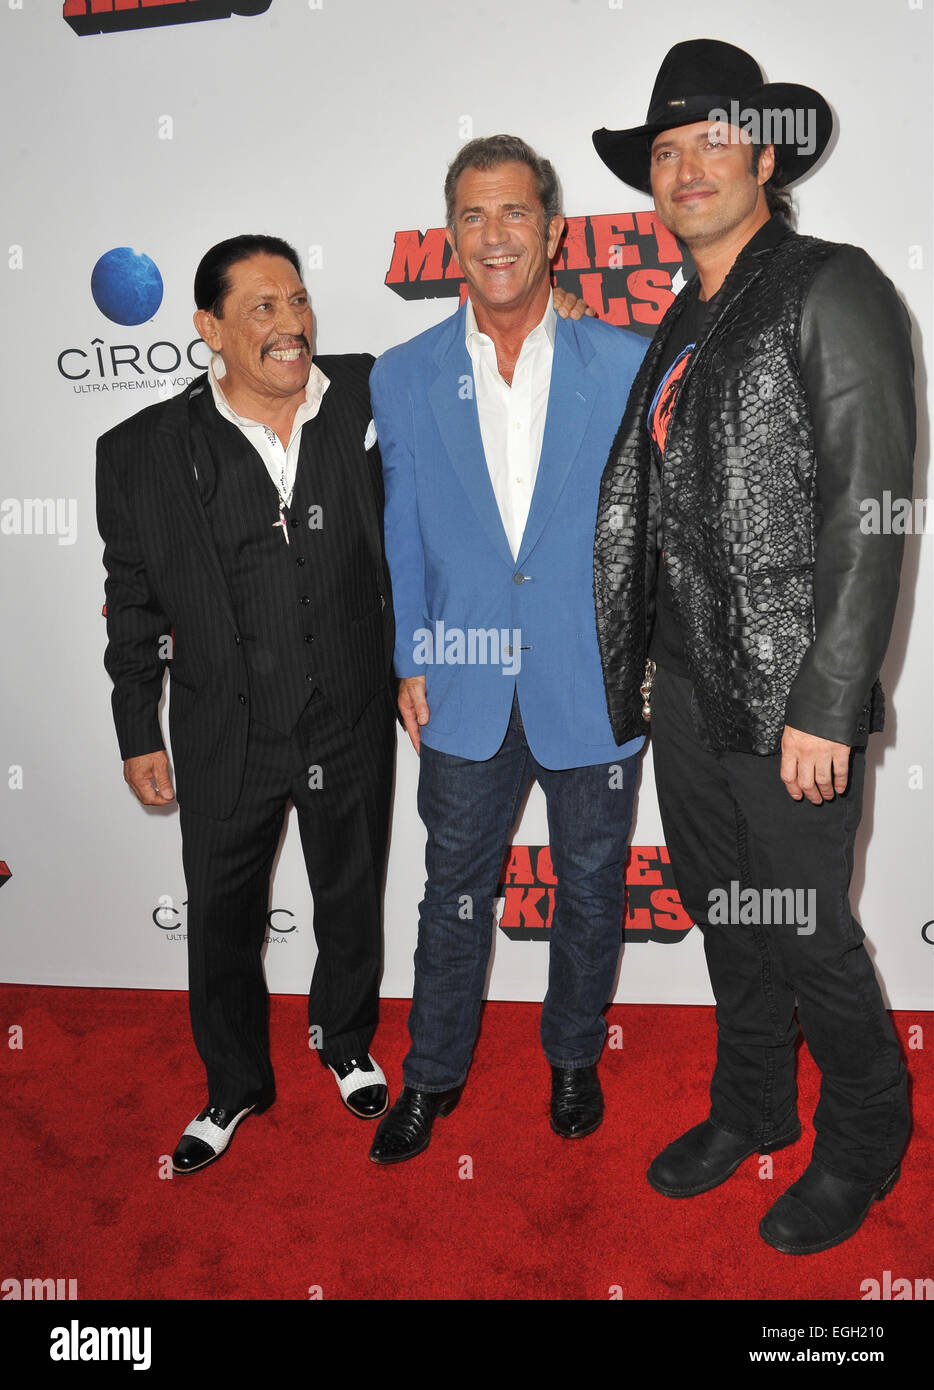 LOS ANGELES, CA - 2 octobre 2013 : Danny Trejo, Mel Gibson et scénariste/réalisateur Robert Rodriguez au Los Angeles première mondiale de leur film "tue" sciages au Regal Cinemas LA Live. Banque D'Images